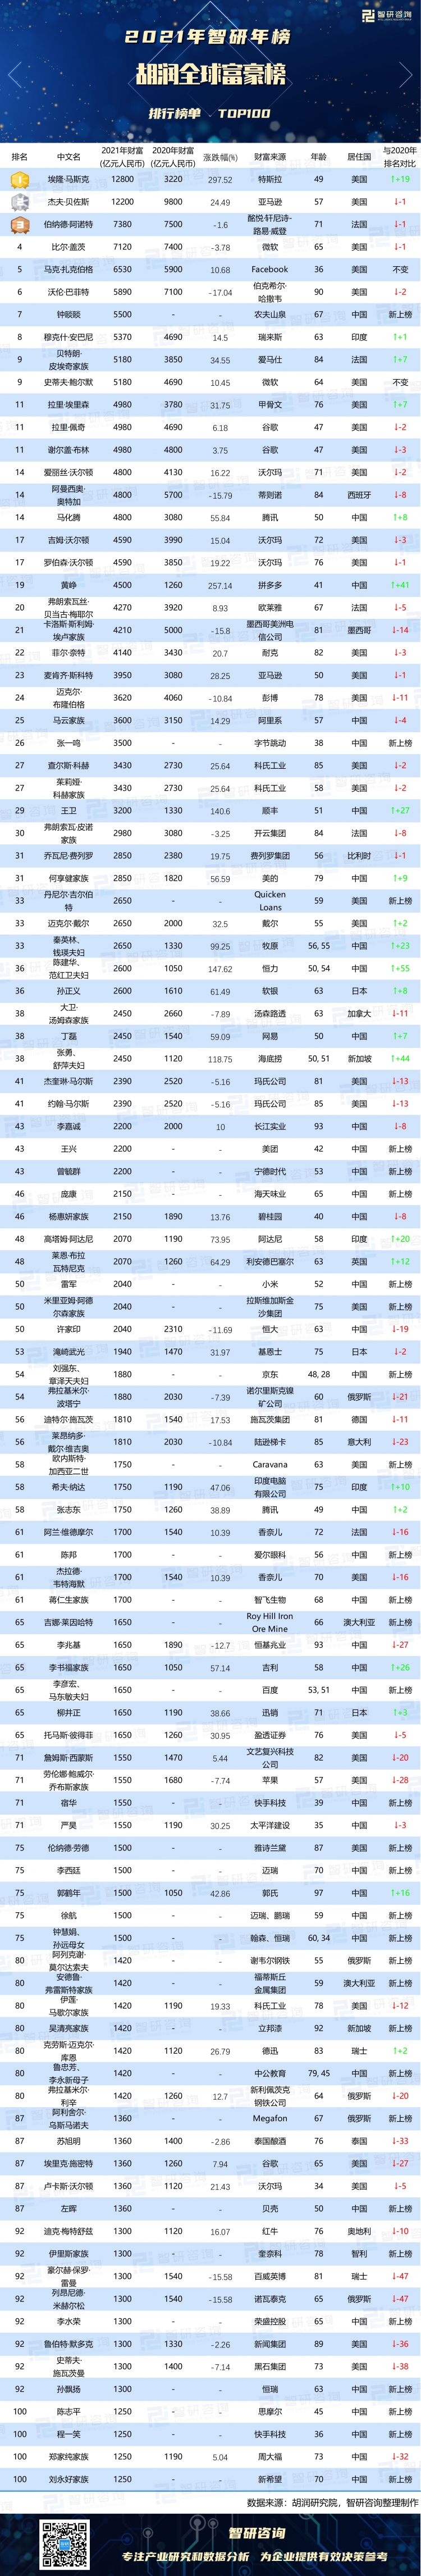 2021年胡润全球富豪排行榜马斯克财富值暴增21位中国富豪新上榜附年榜